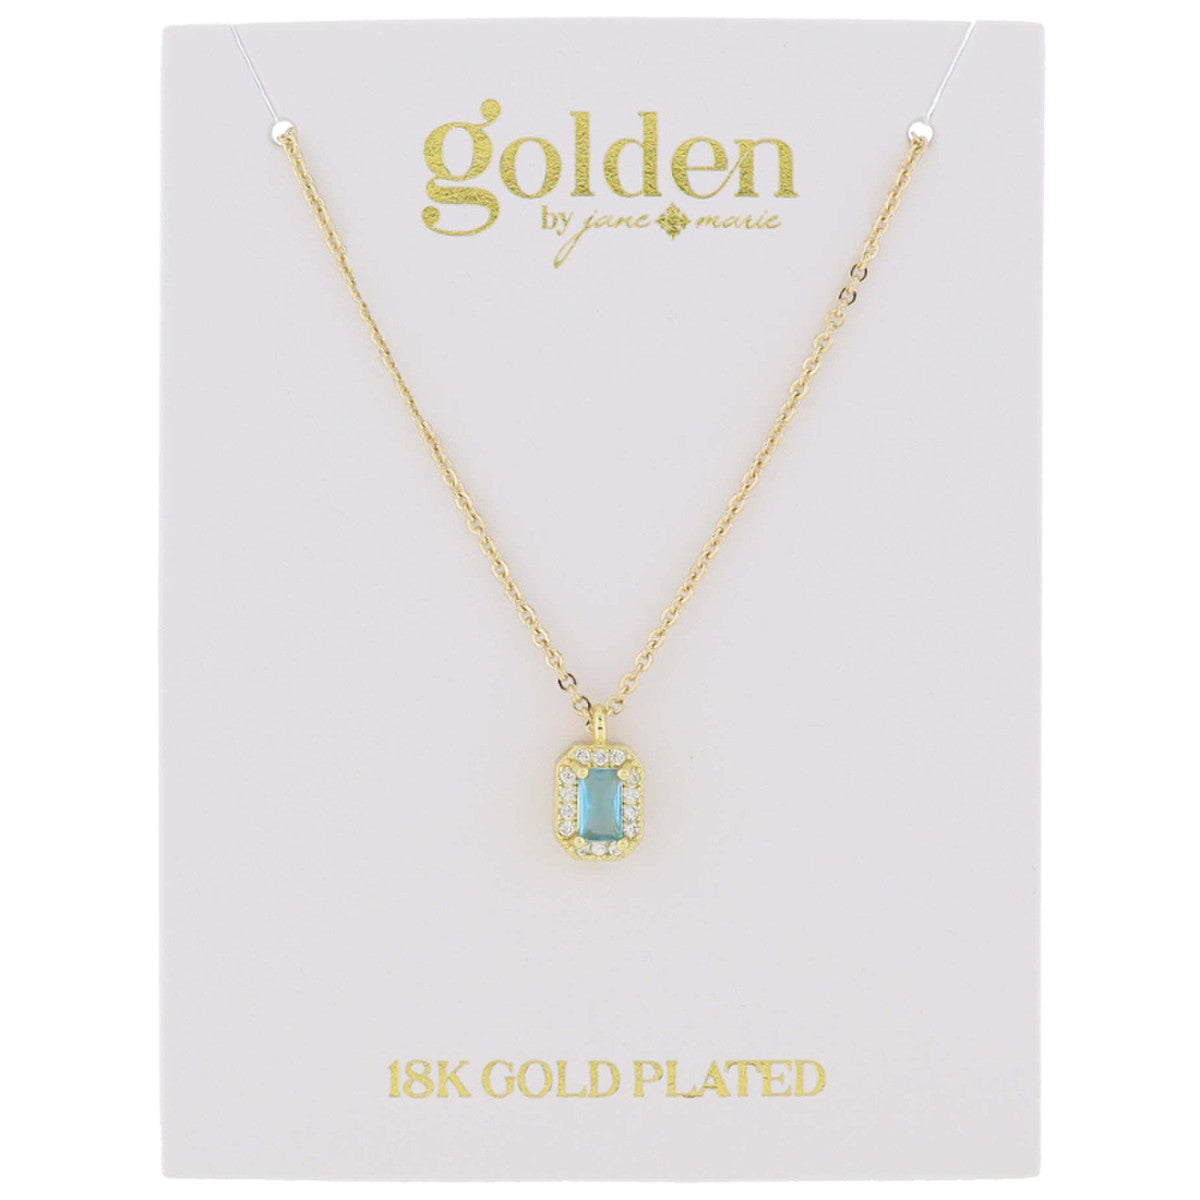 Golden- Birthstone Necklace